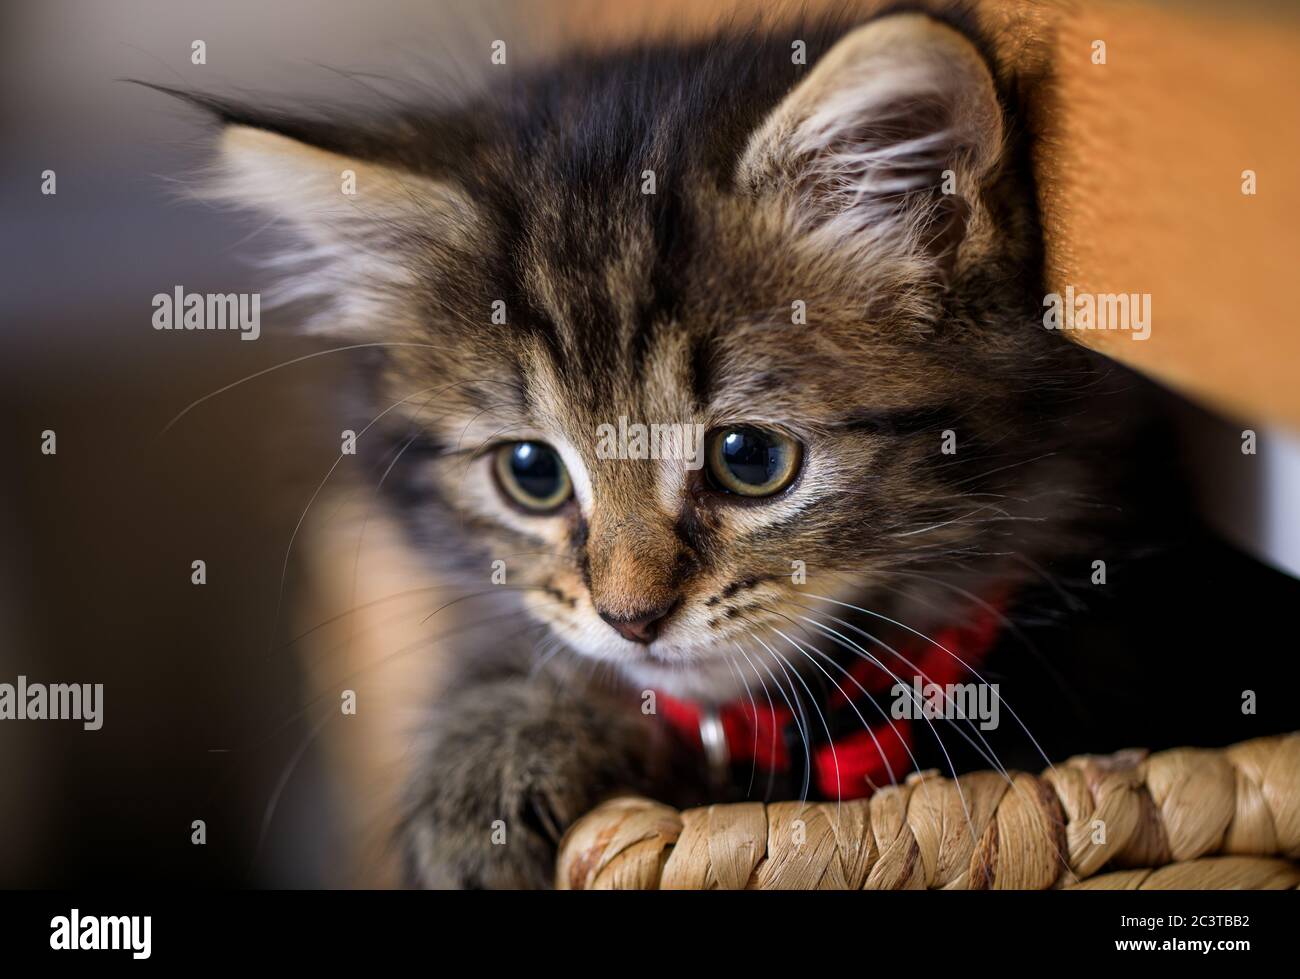 Gattino di otto settimane fotografato godendo la vita in un cesto. Foto Stock